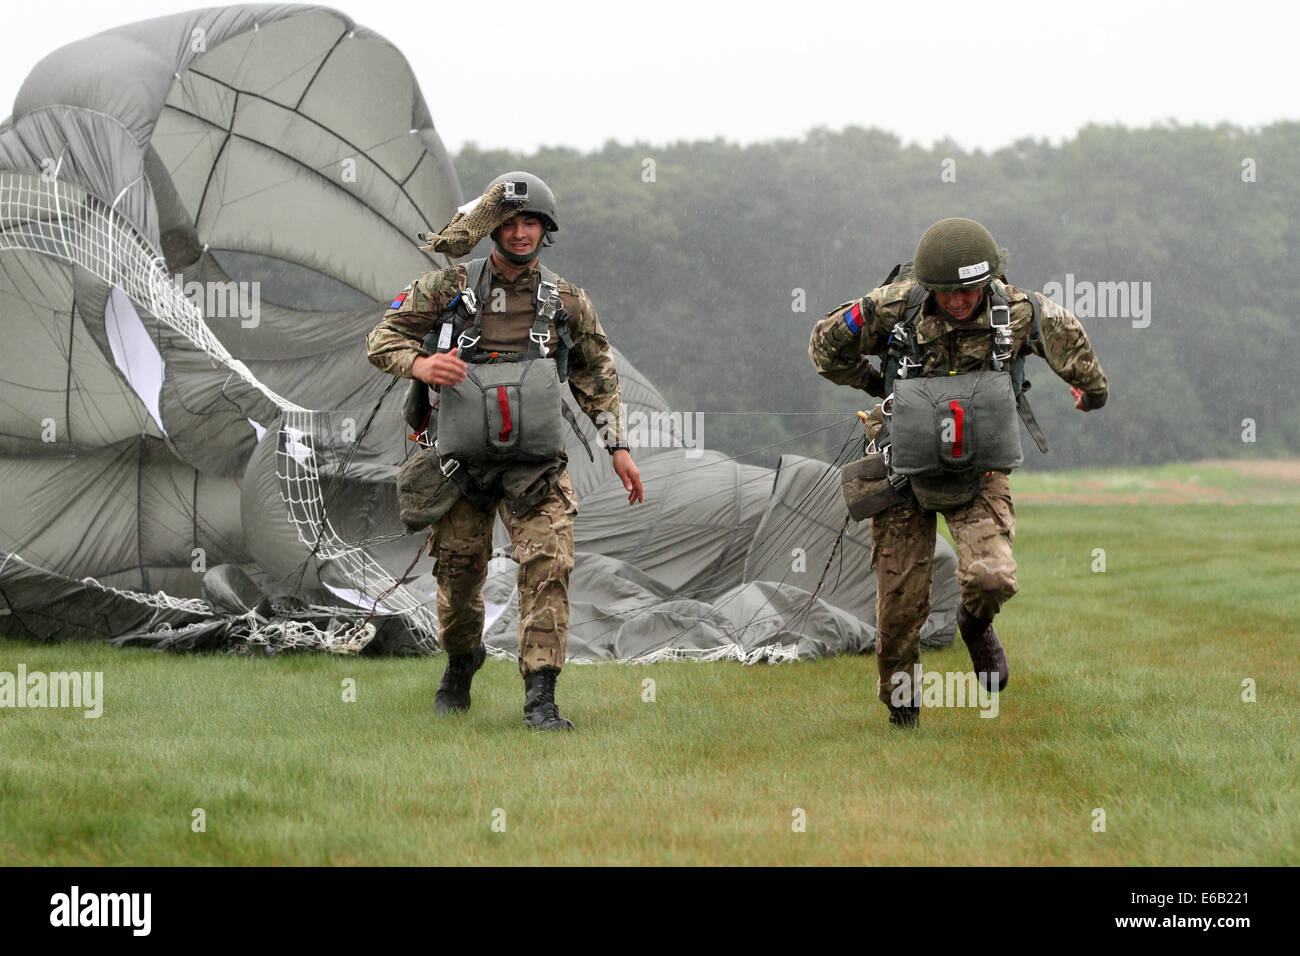 Les parachutistes militaires britanniques traversent la zone de chute au cours de Leapfest XXXI Kingston, R.I., 3 août 2014. Un parachute dans l'Leapfest est parrainée par la Garde nationale de Rhode Island pour promouvoir la formation technique de haut niveau au sein de l'int Banque D'Images